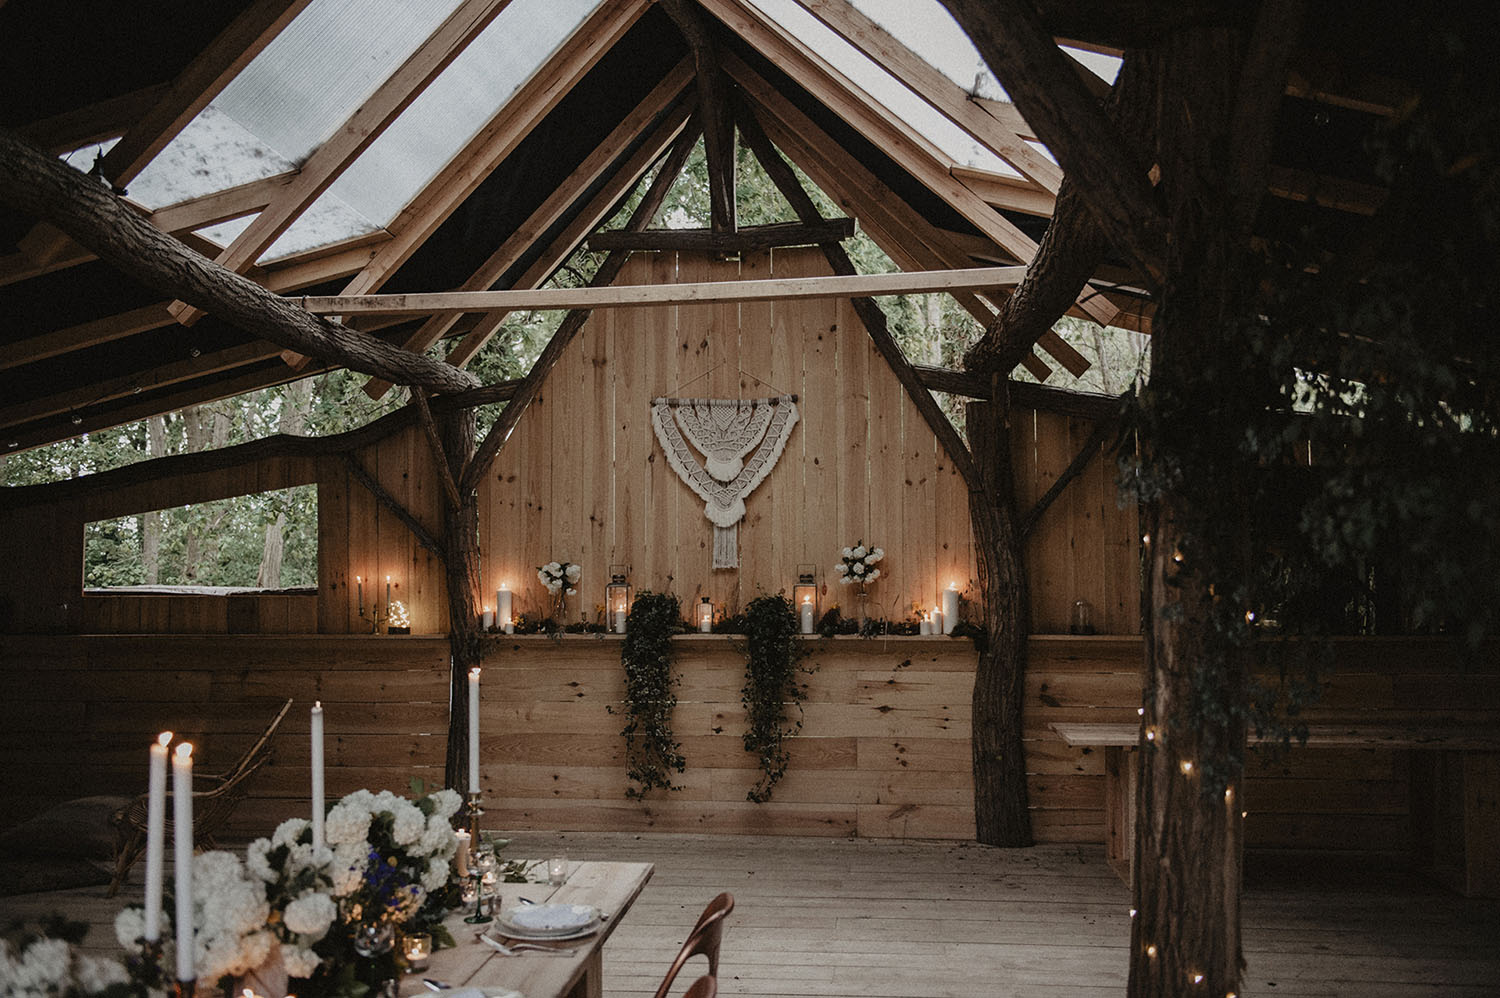 La Wood House au Coco barn Wood Lodge, deco bohème pour un mariage écoresponsable, inspiration nature. Photographe Pau, 64000.